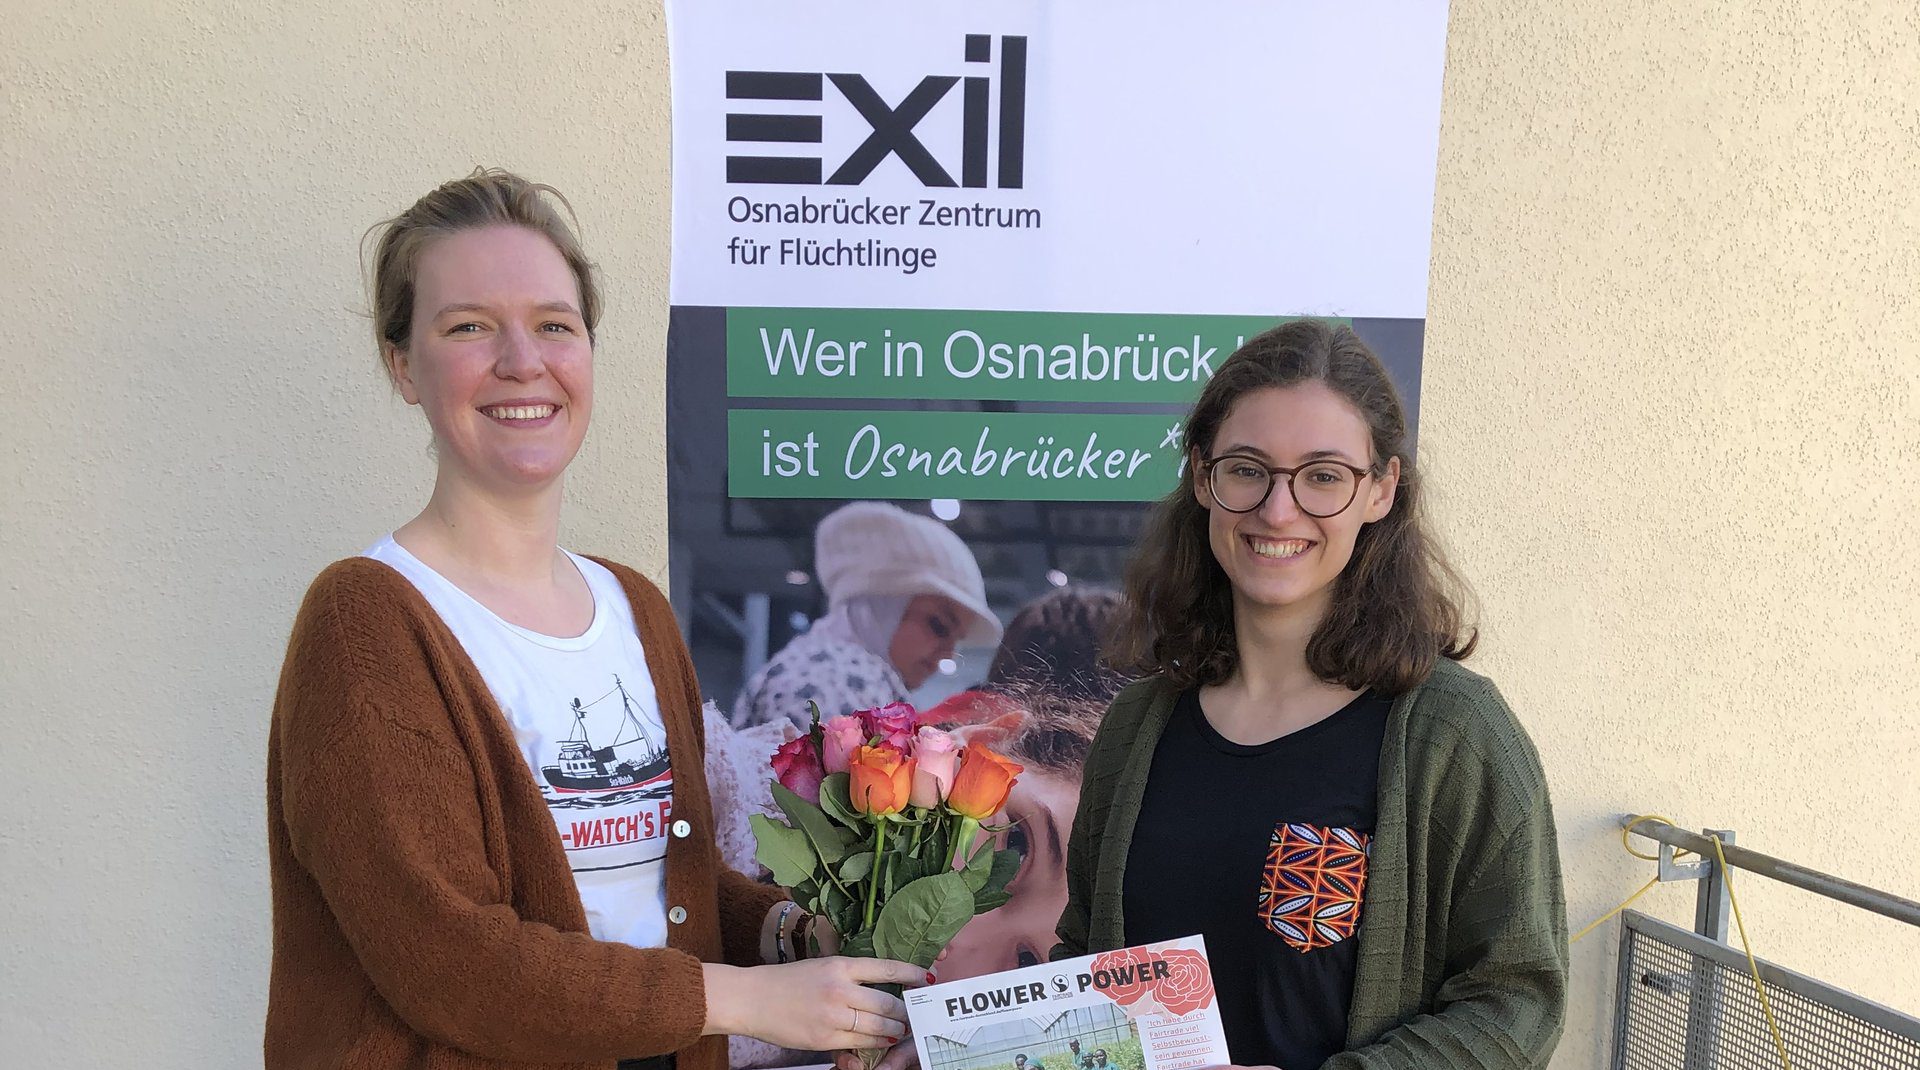 Eine Frau gratuliert einer anderen Frau mit Blumen, im Hintergrund ein Roll-Up mit der Aufschrift "Exil"